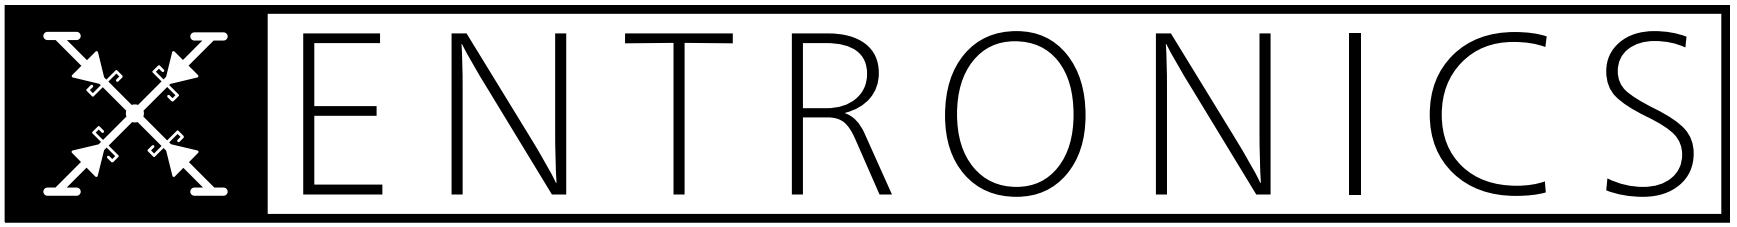 Xentronics Logo 2